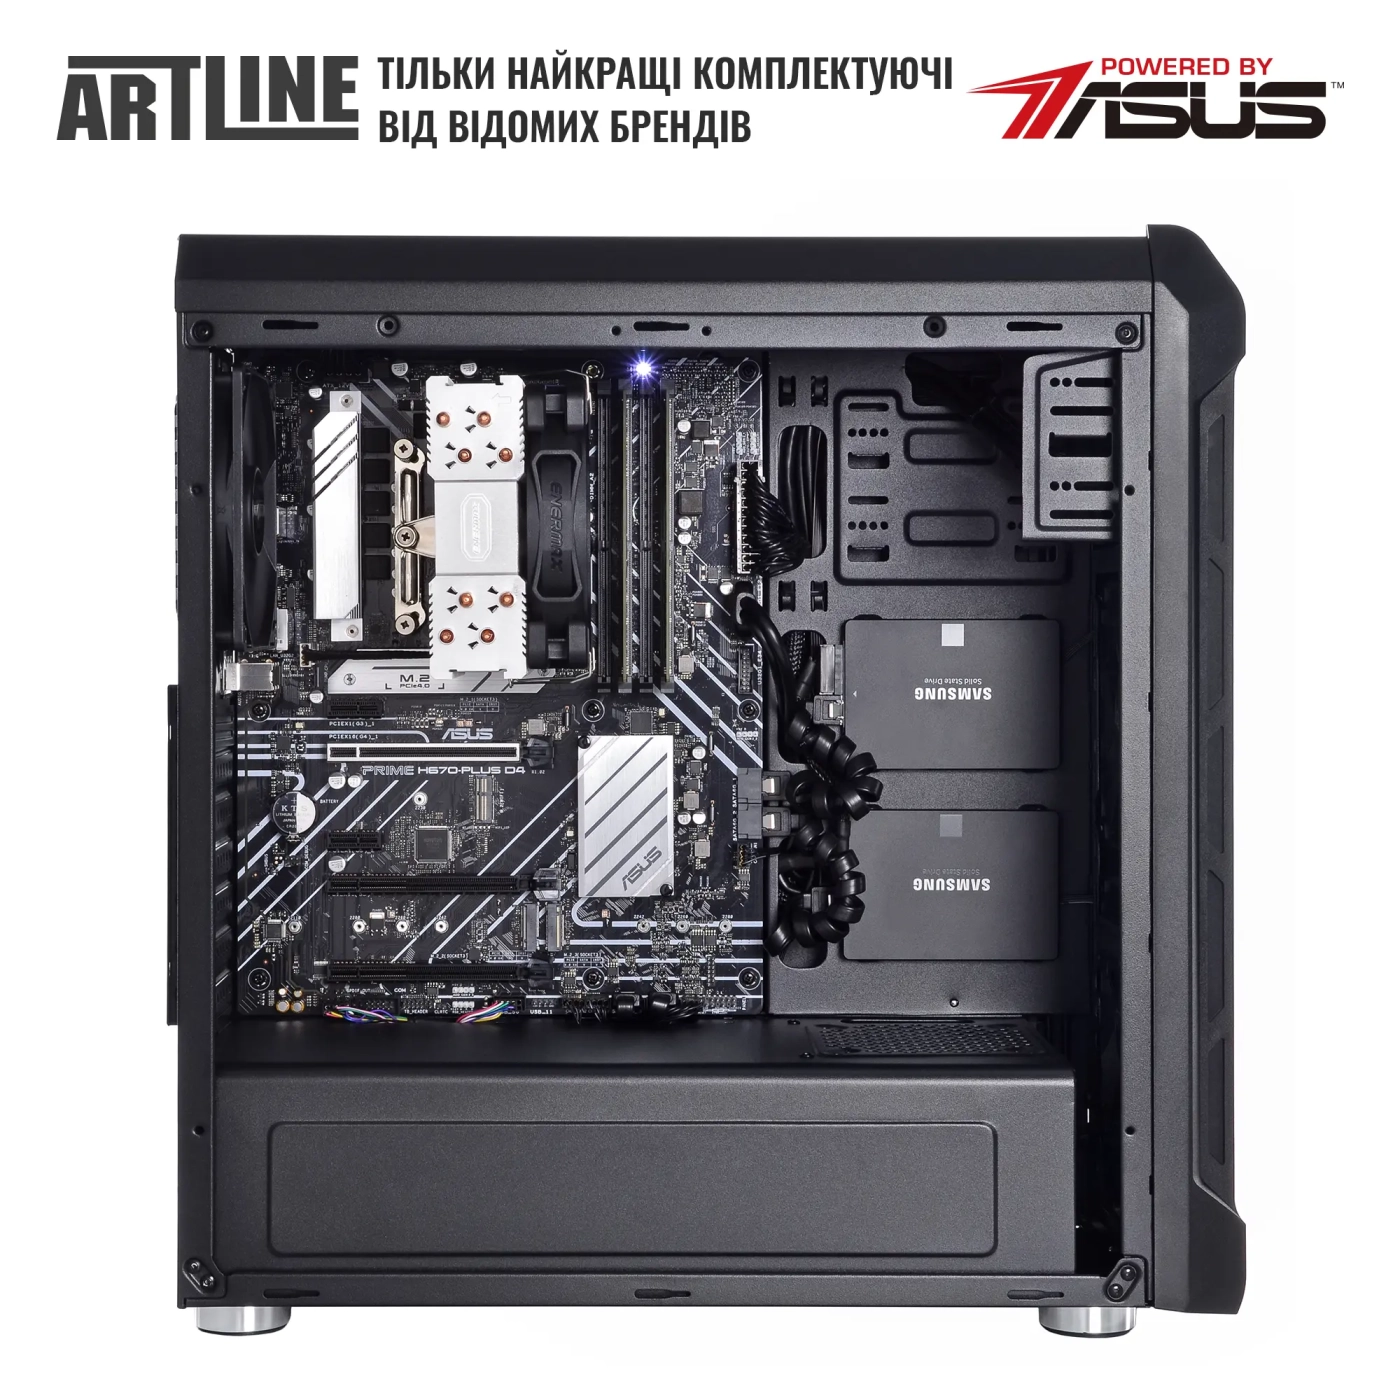 Купить Сервер ARTLINE Business T27 (T27v31) - фото 4